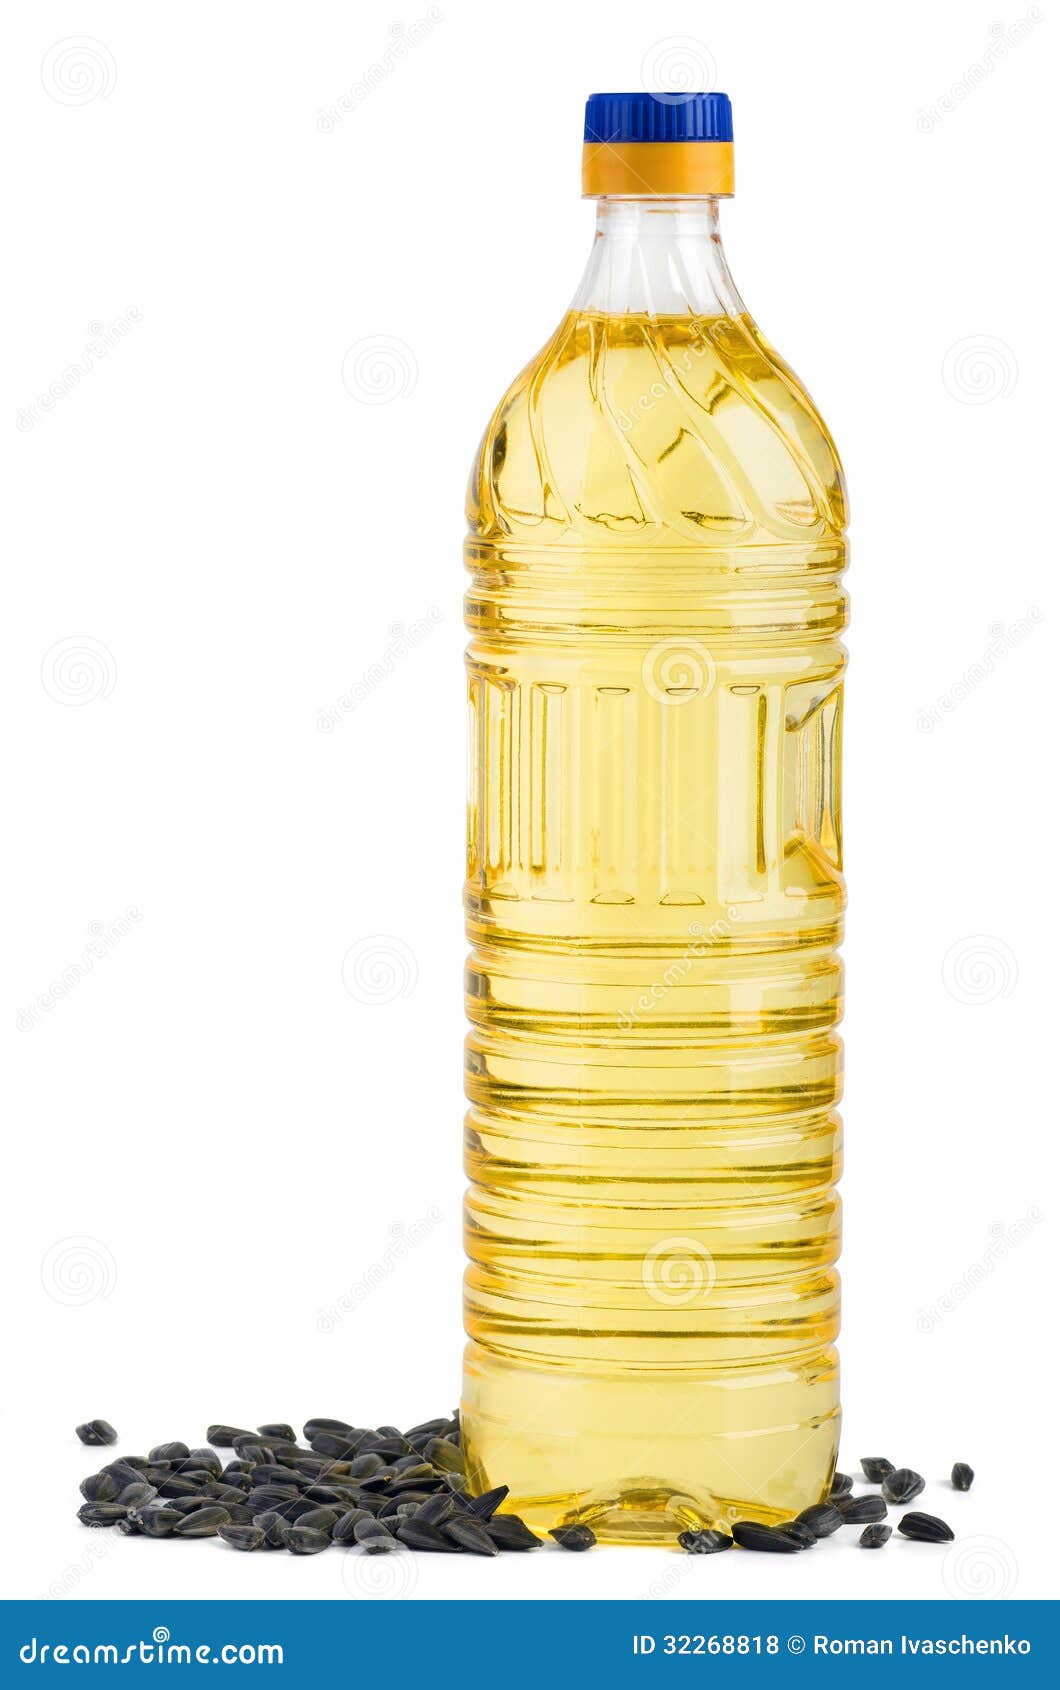 Бутылки под растительное масло. Бутылка под подсолнечное масло. Бутылка из под подсолнечного масла. Масло подсолнечное мокап. Подсолнечное масло в треугольной бутылке.